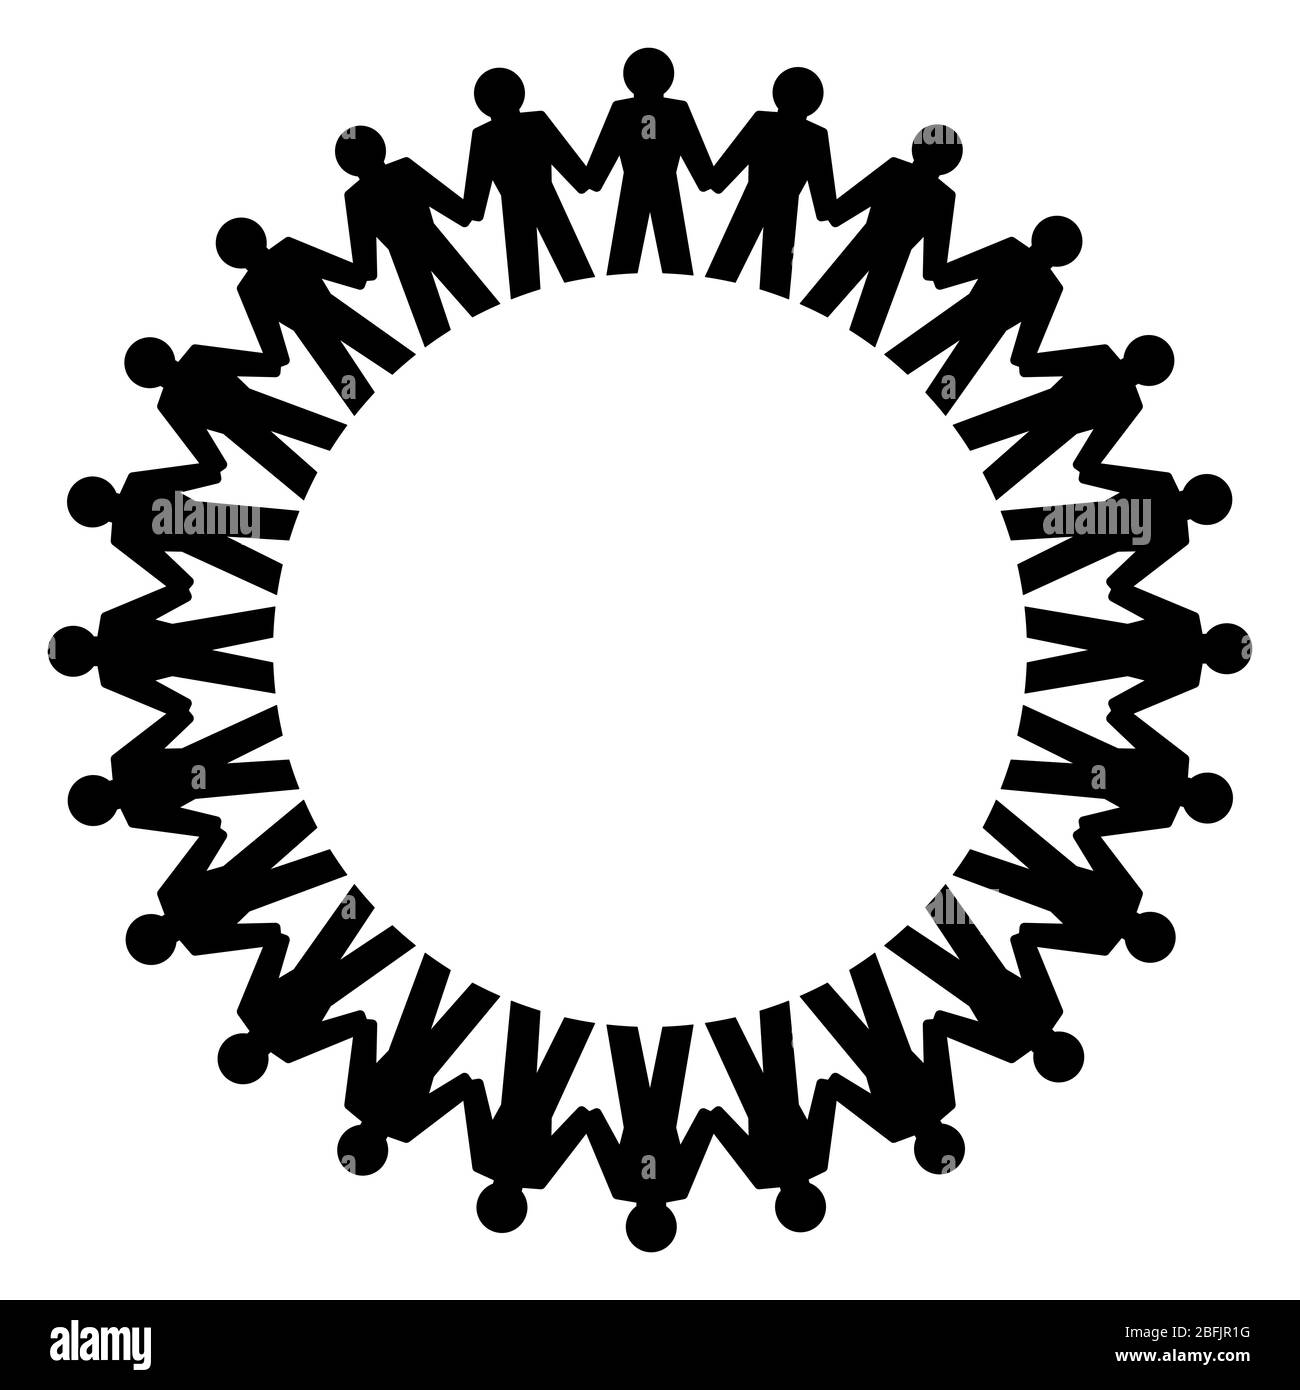 Menschen, die die Hände halten und in einem großen Kreis stehen. Abstraktes Symbol der verbundenen Menschen, die einen Kreis bilden, um Freundschaft, Liebe und Harmonie auszudrücken. Stockfoto